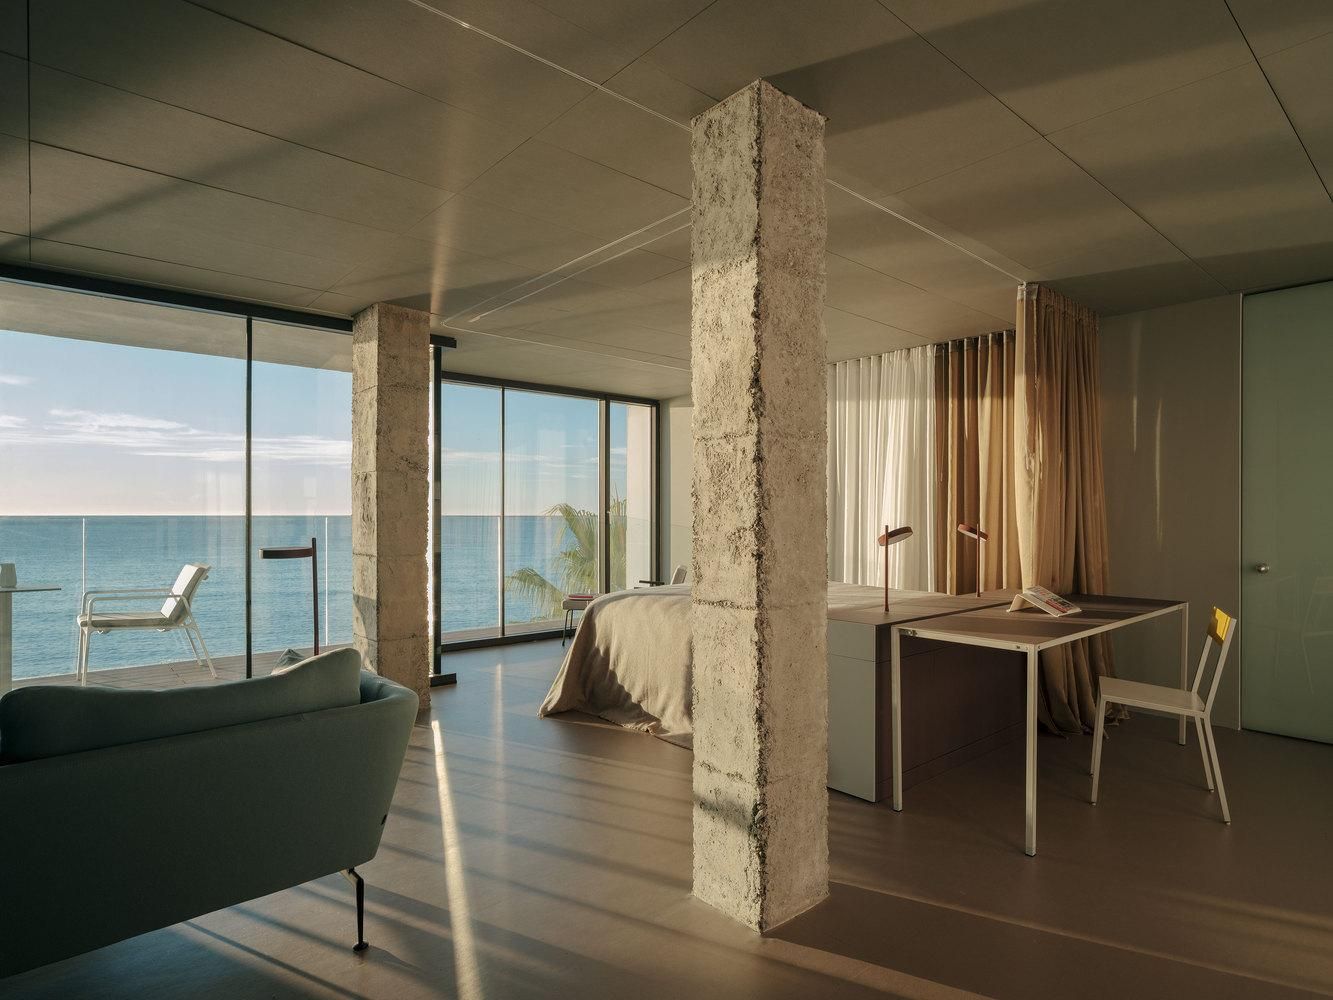 Життя на березі океану: дизайн іспанської квартири на узбережжі – фото 